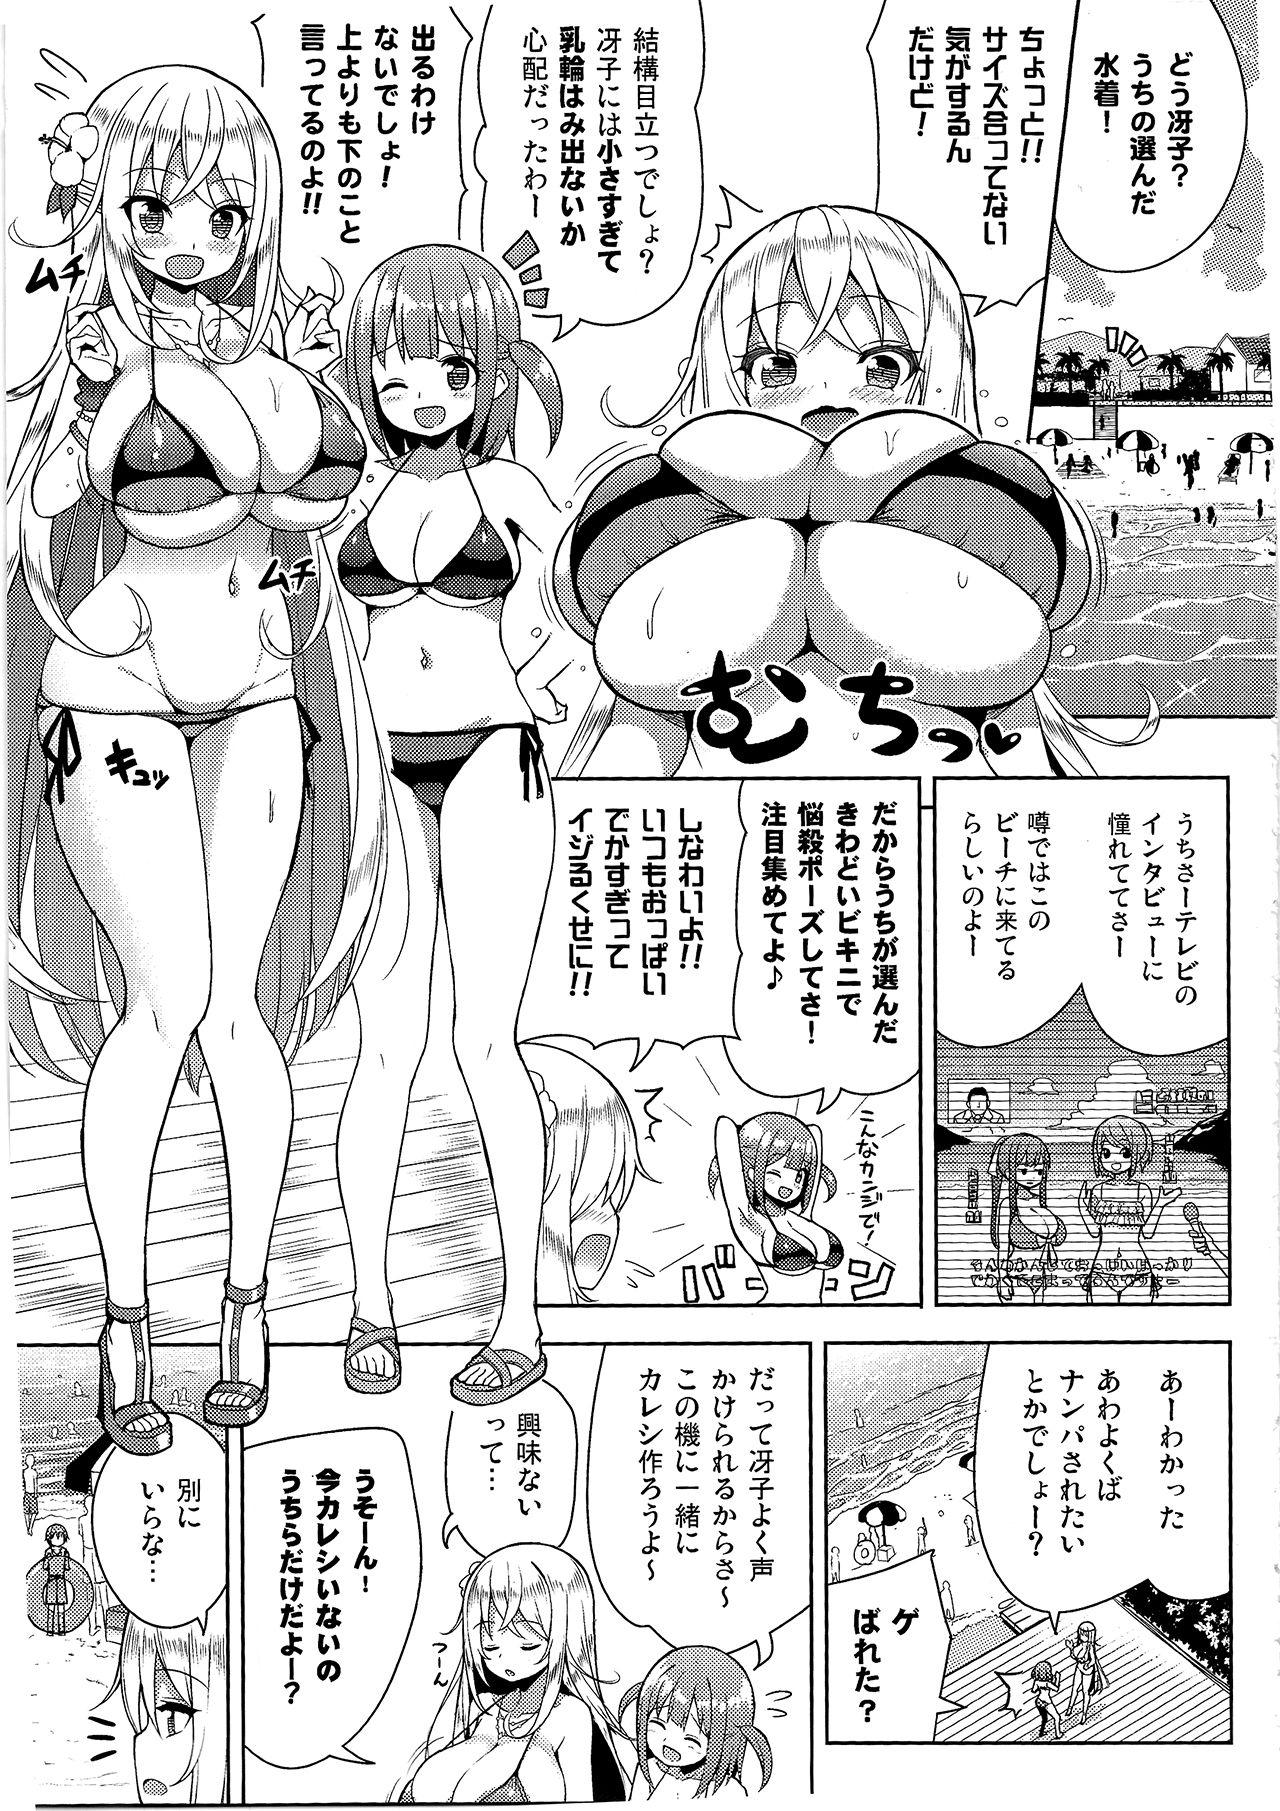 Fun Ikenai Bikini no Onee-san 2 - Original Fist - Page 4